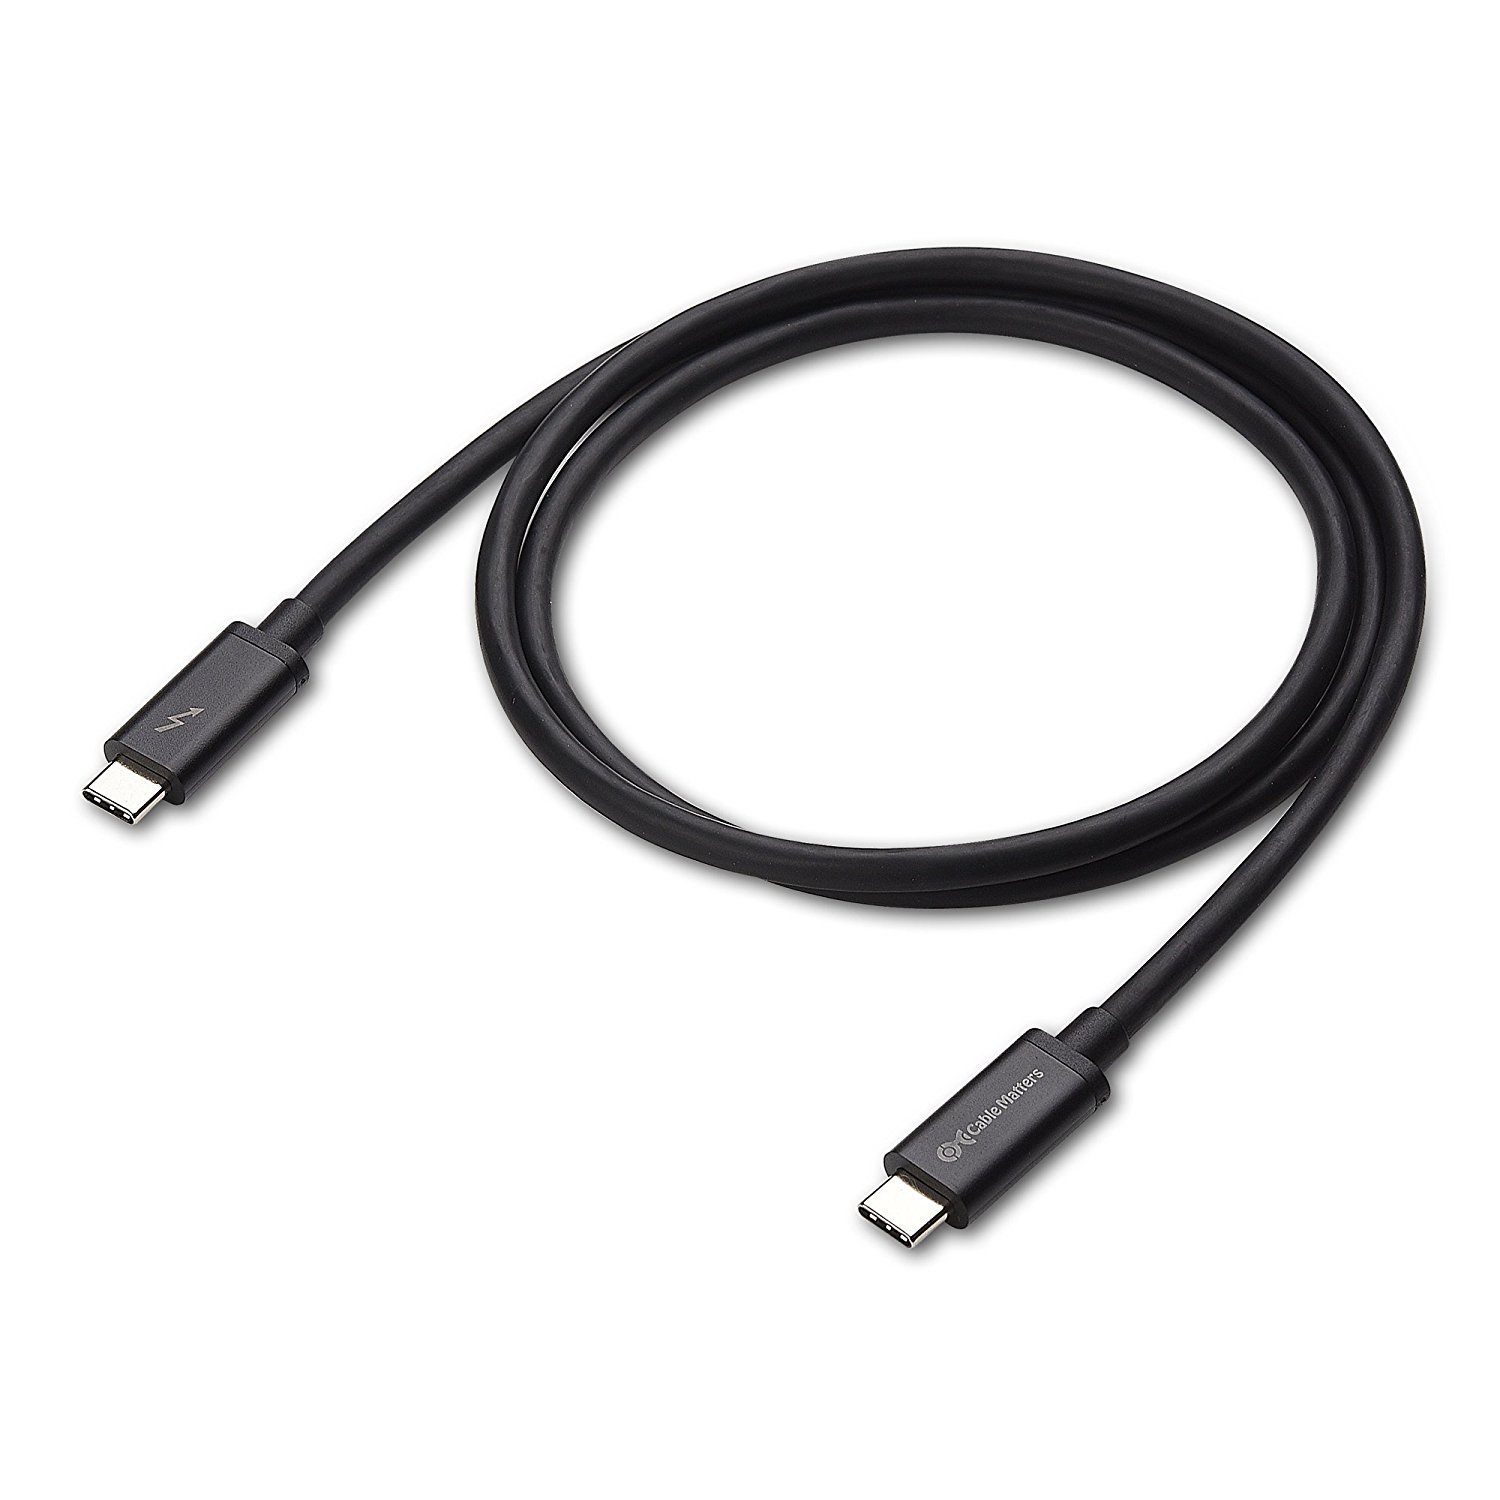 Thunderbolt 3 кабель. Thunderbolt 3 (USB-C) Cable (0.8 m). Кабель USB 3 Micro b - Thunderbolt.